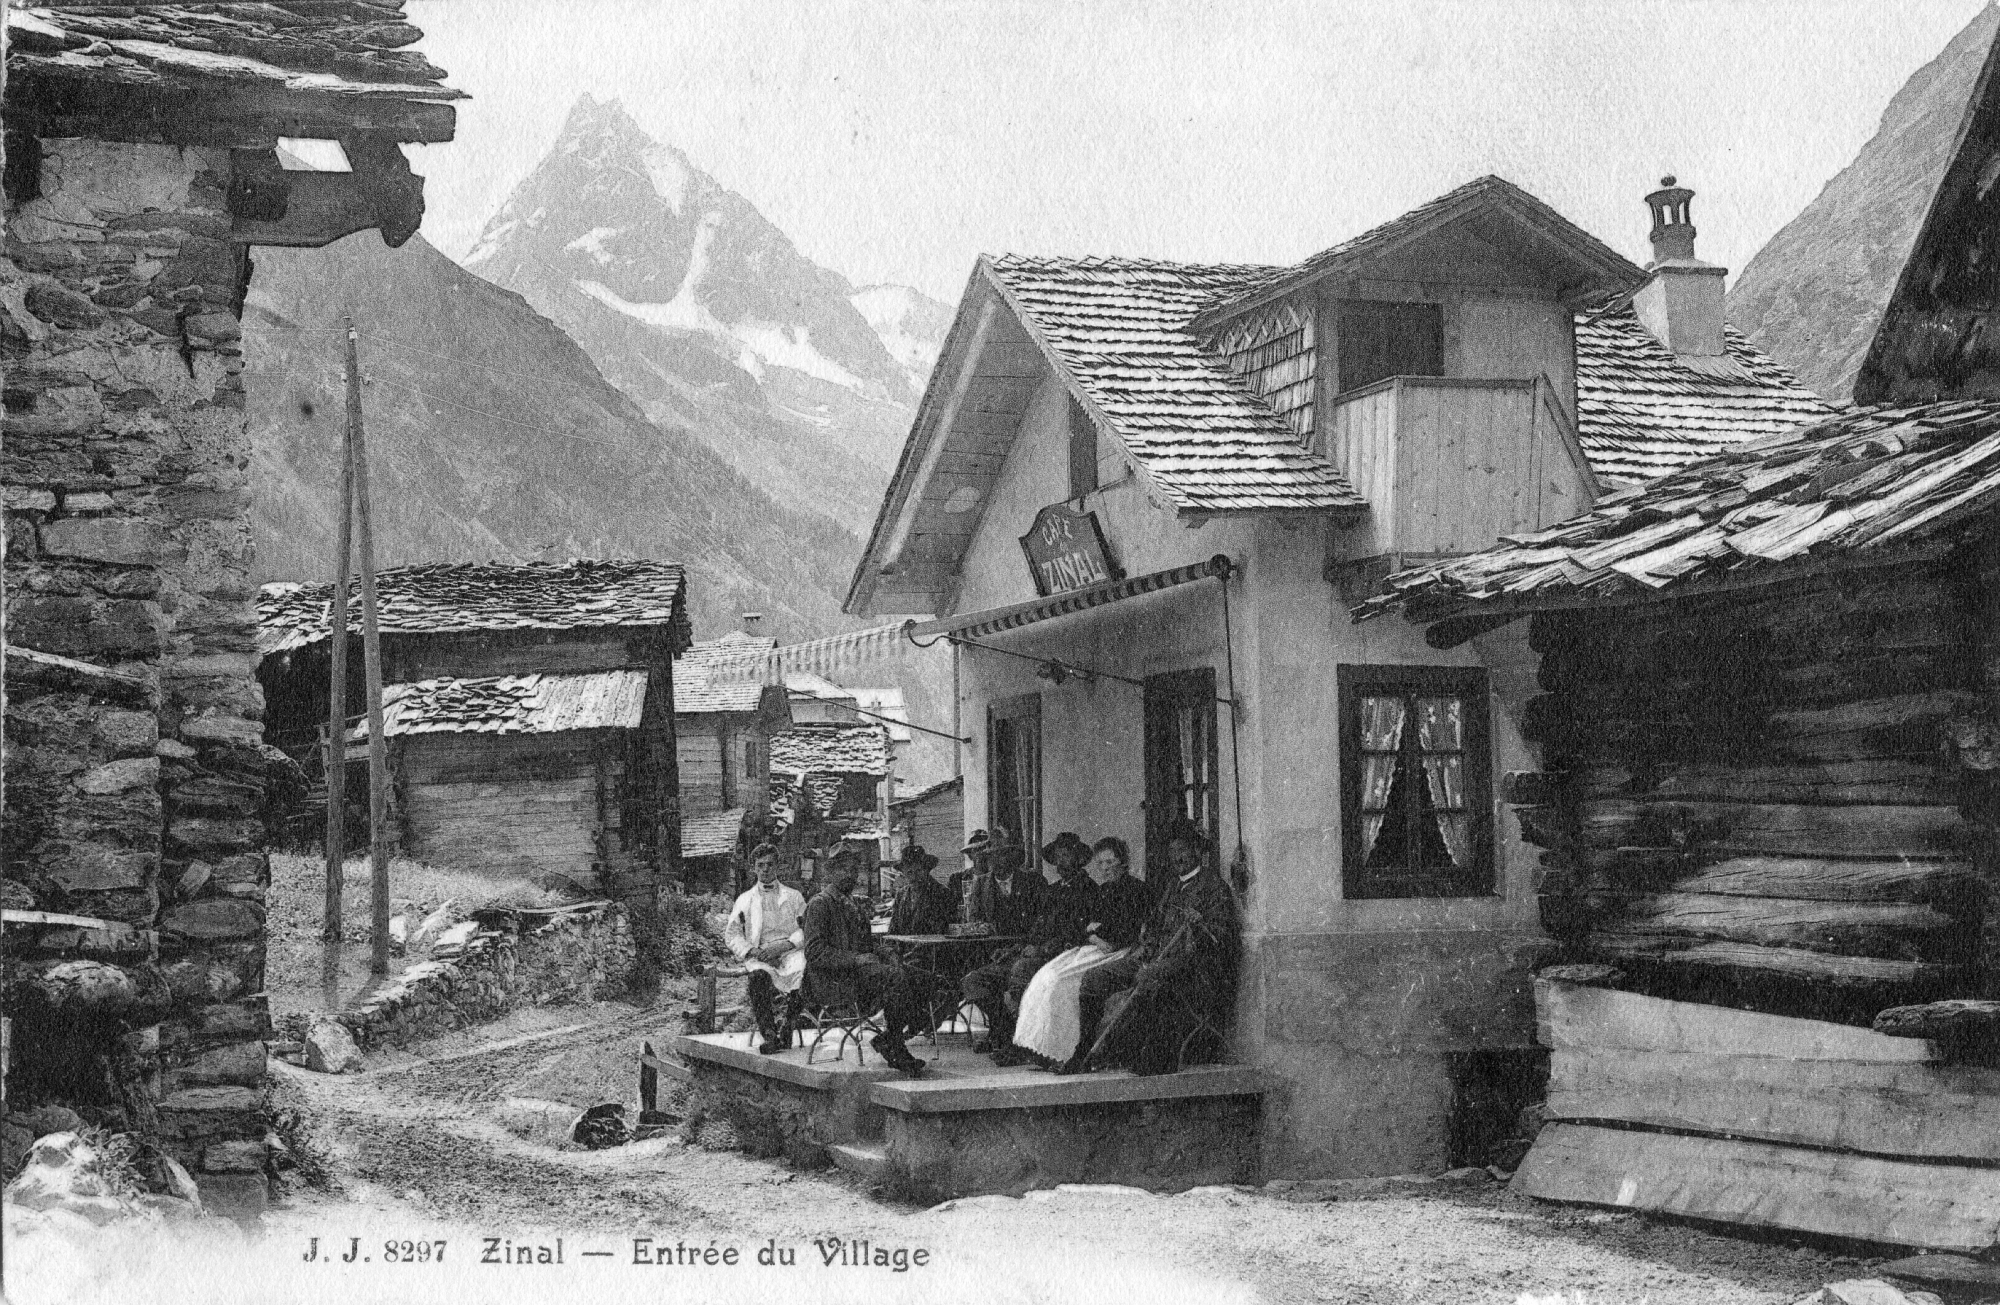 Zinal, ici sur une carte postale datant de 1900 environ, l'un des villages à découvrir lors de visites qui font le lien entre le passé et le présent.